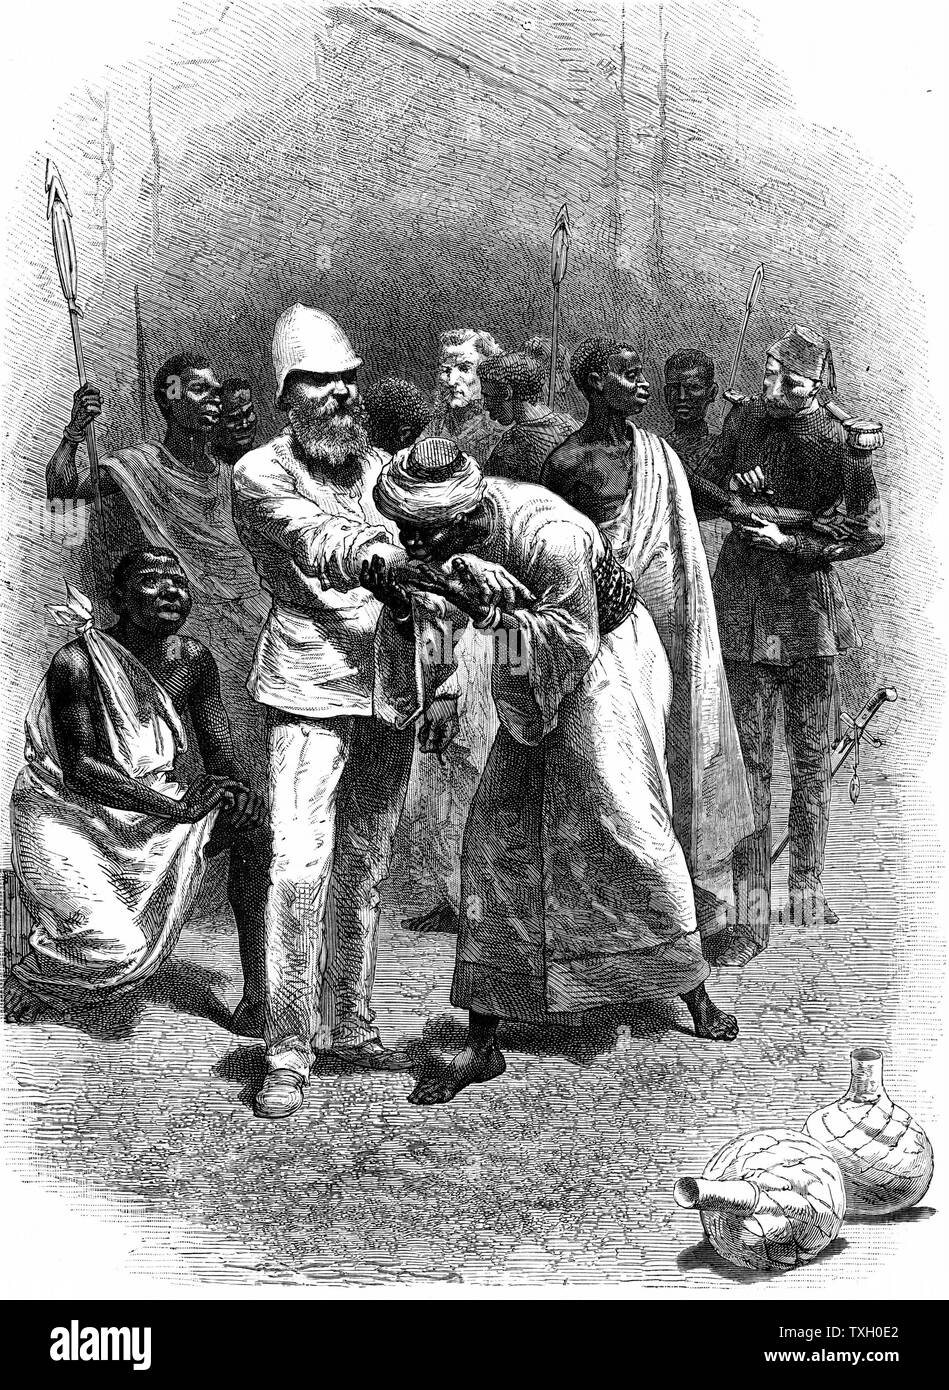 Samuel White Baker (1821-1893) Explorateur anglais et militant anti-esclavagiste, ce pacte de sang avec le roi Rionga lors de son commandement de l'expédition montée par Khédive d'Egypte pour supprimer l'esclavage près de Nyanza Albert, 1872. La gravure sur bois de Londres c.1880 Banque D'Images